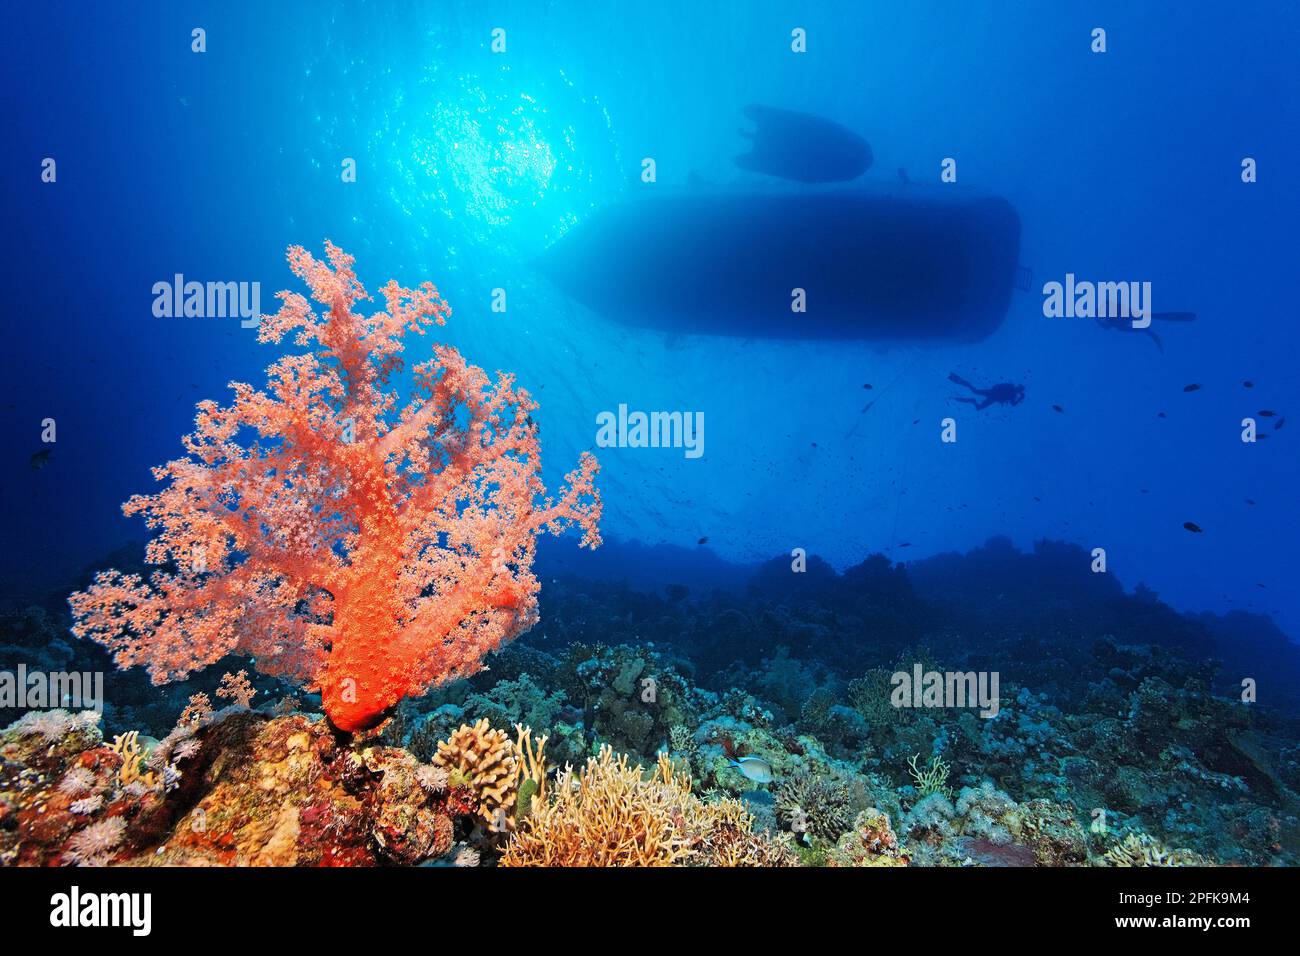 Barriera corallina, parete ripida con corallo morbido Klunzingers (Dendronephthya klunzingeri), nella silhouette posteriore della nave, nave subacquea, nave subacquea più sicura Foto Stock